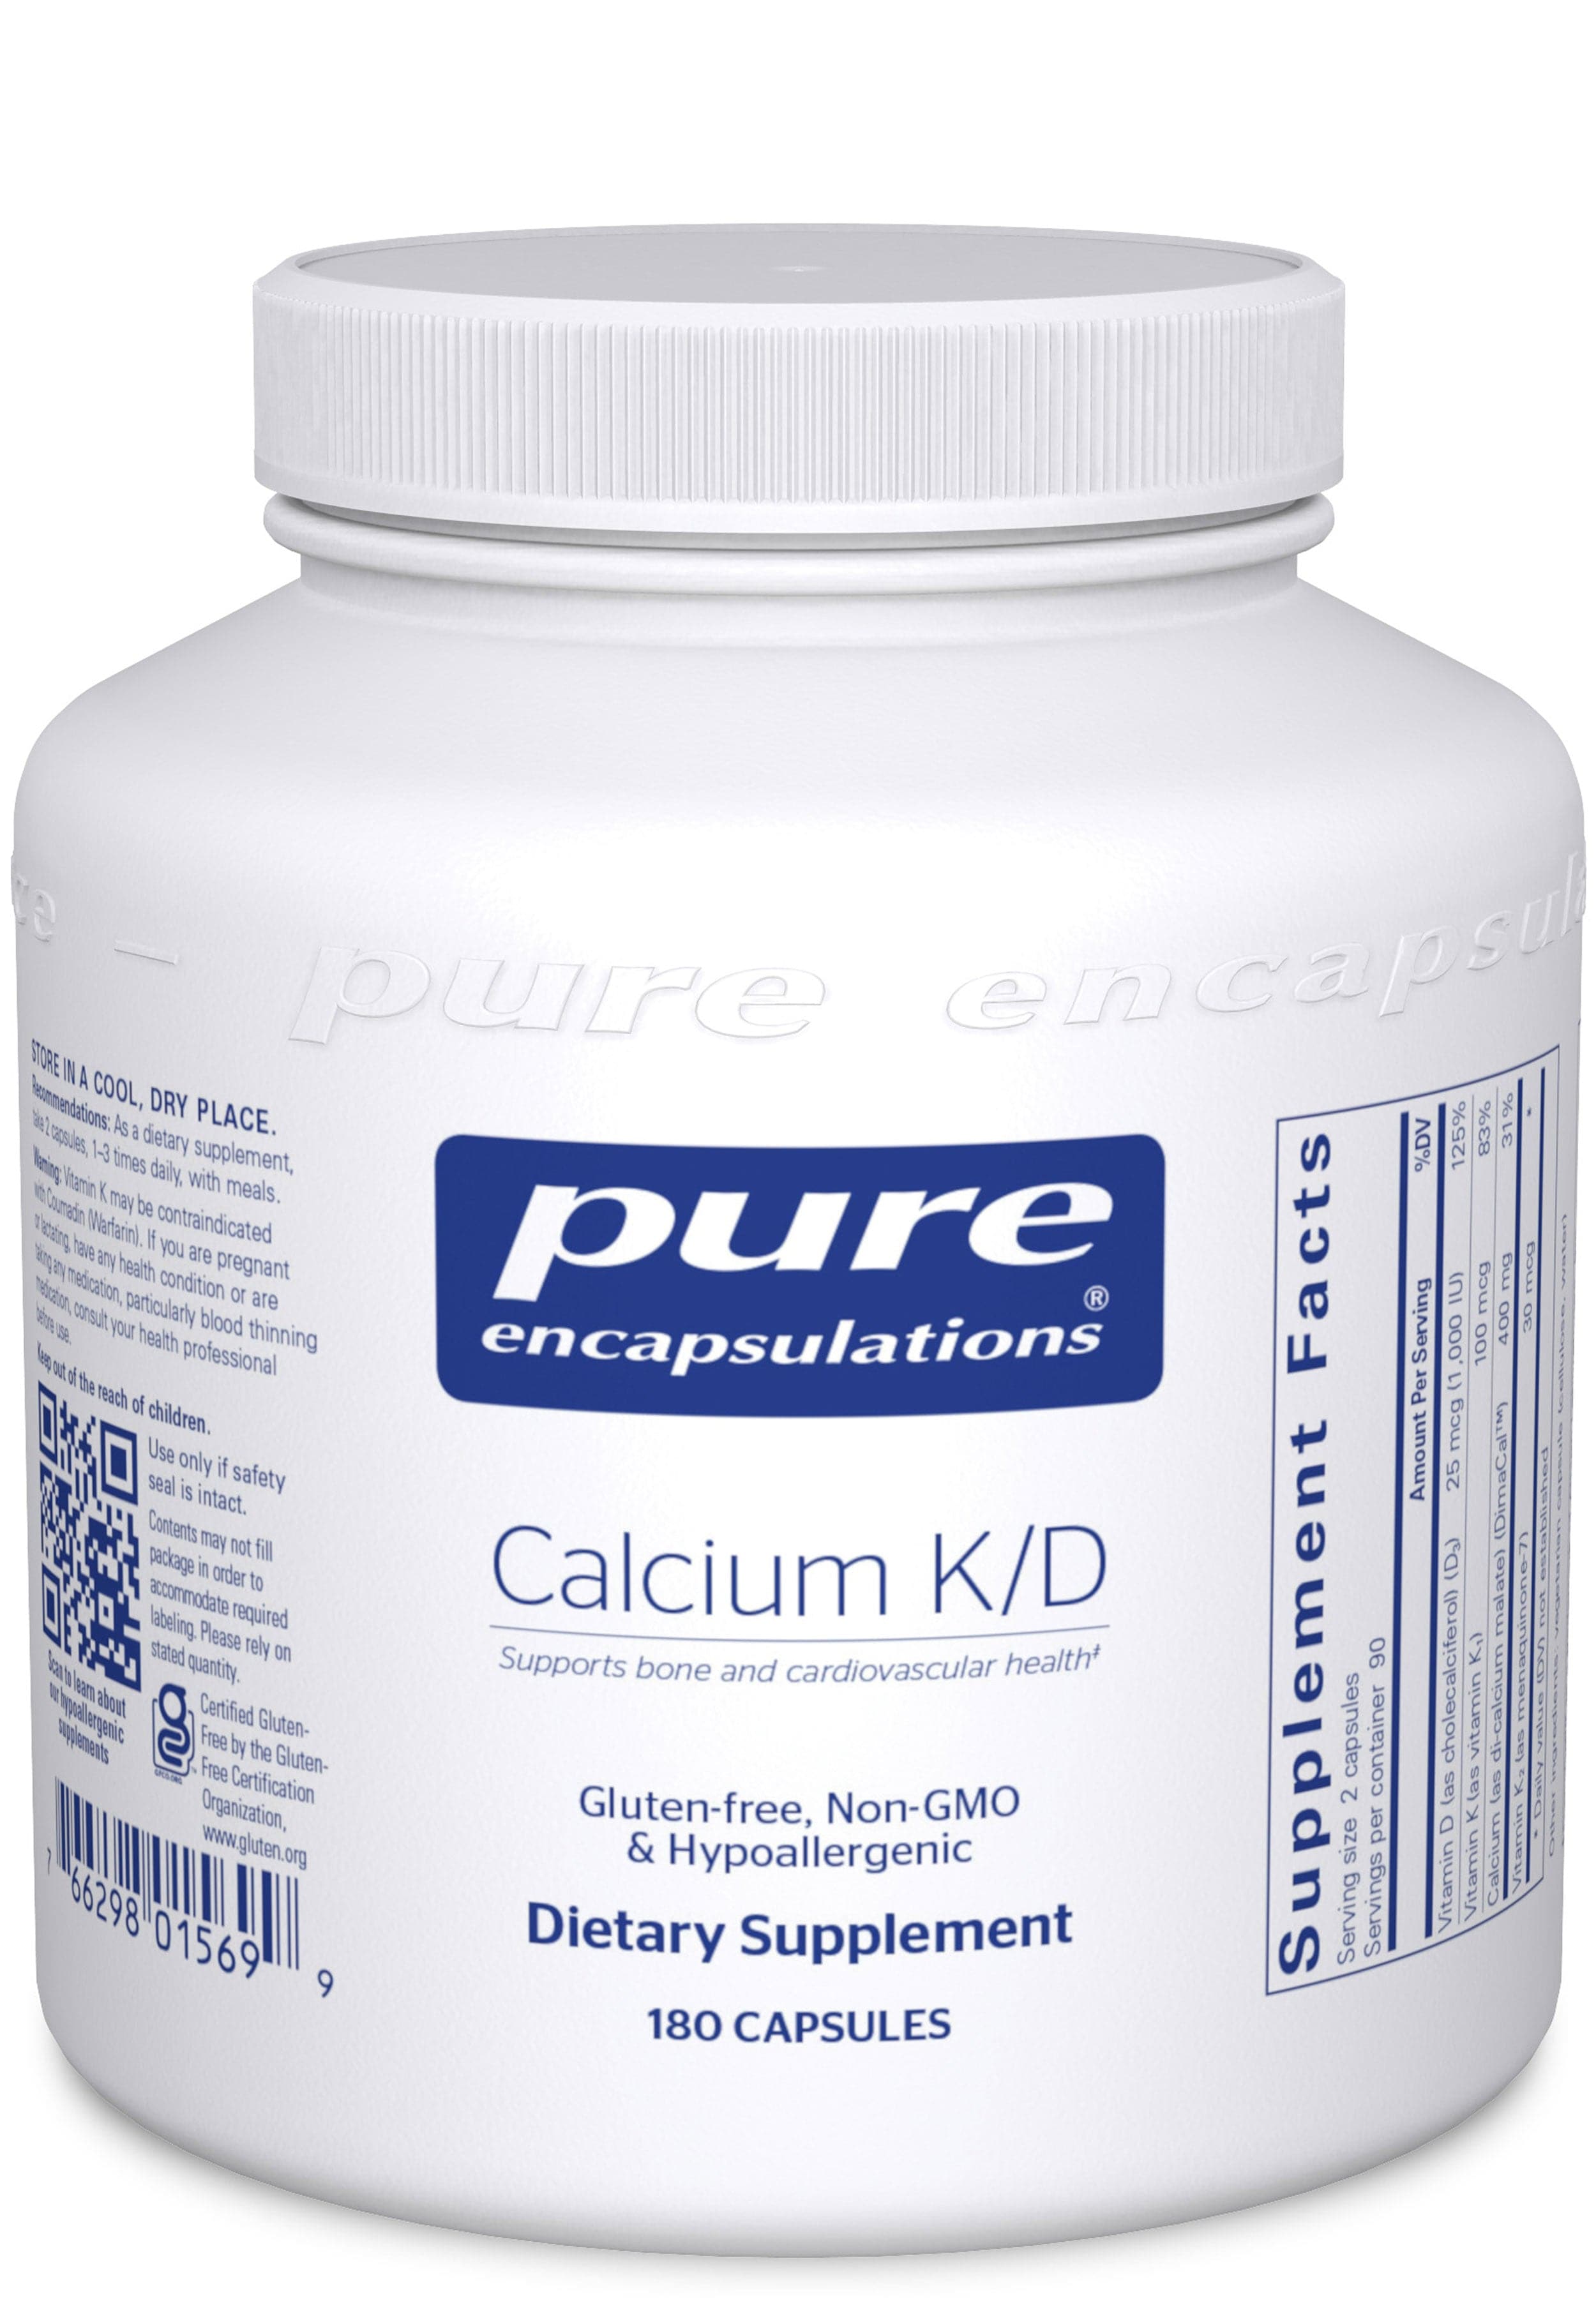 Pure Encapsulations Calcium K/D